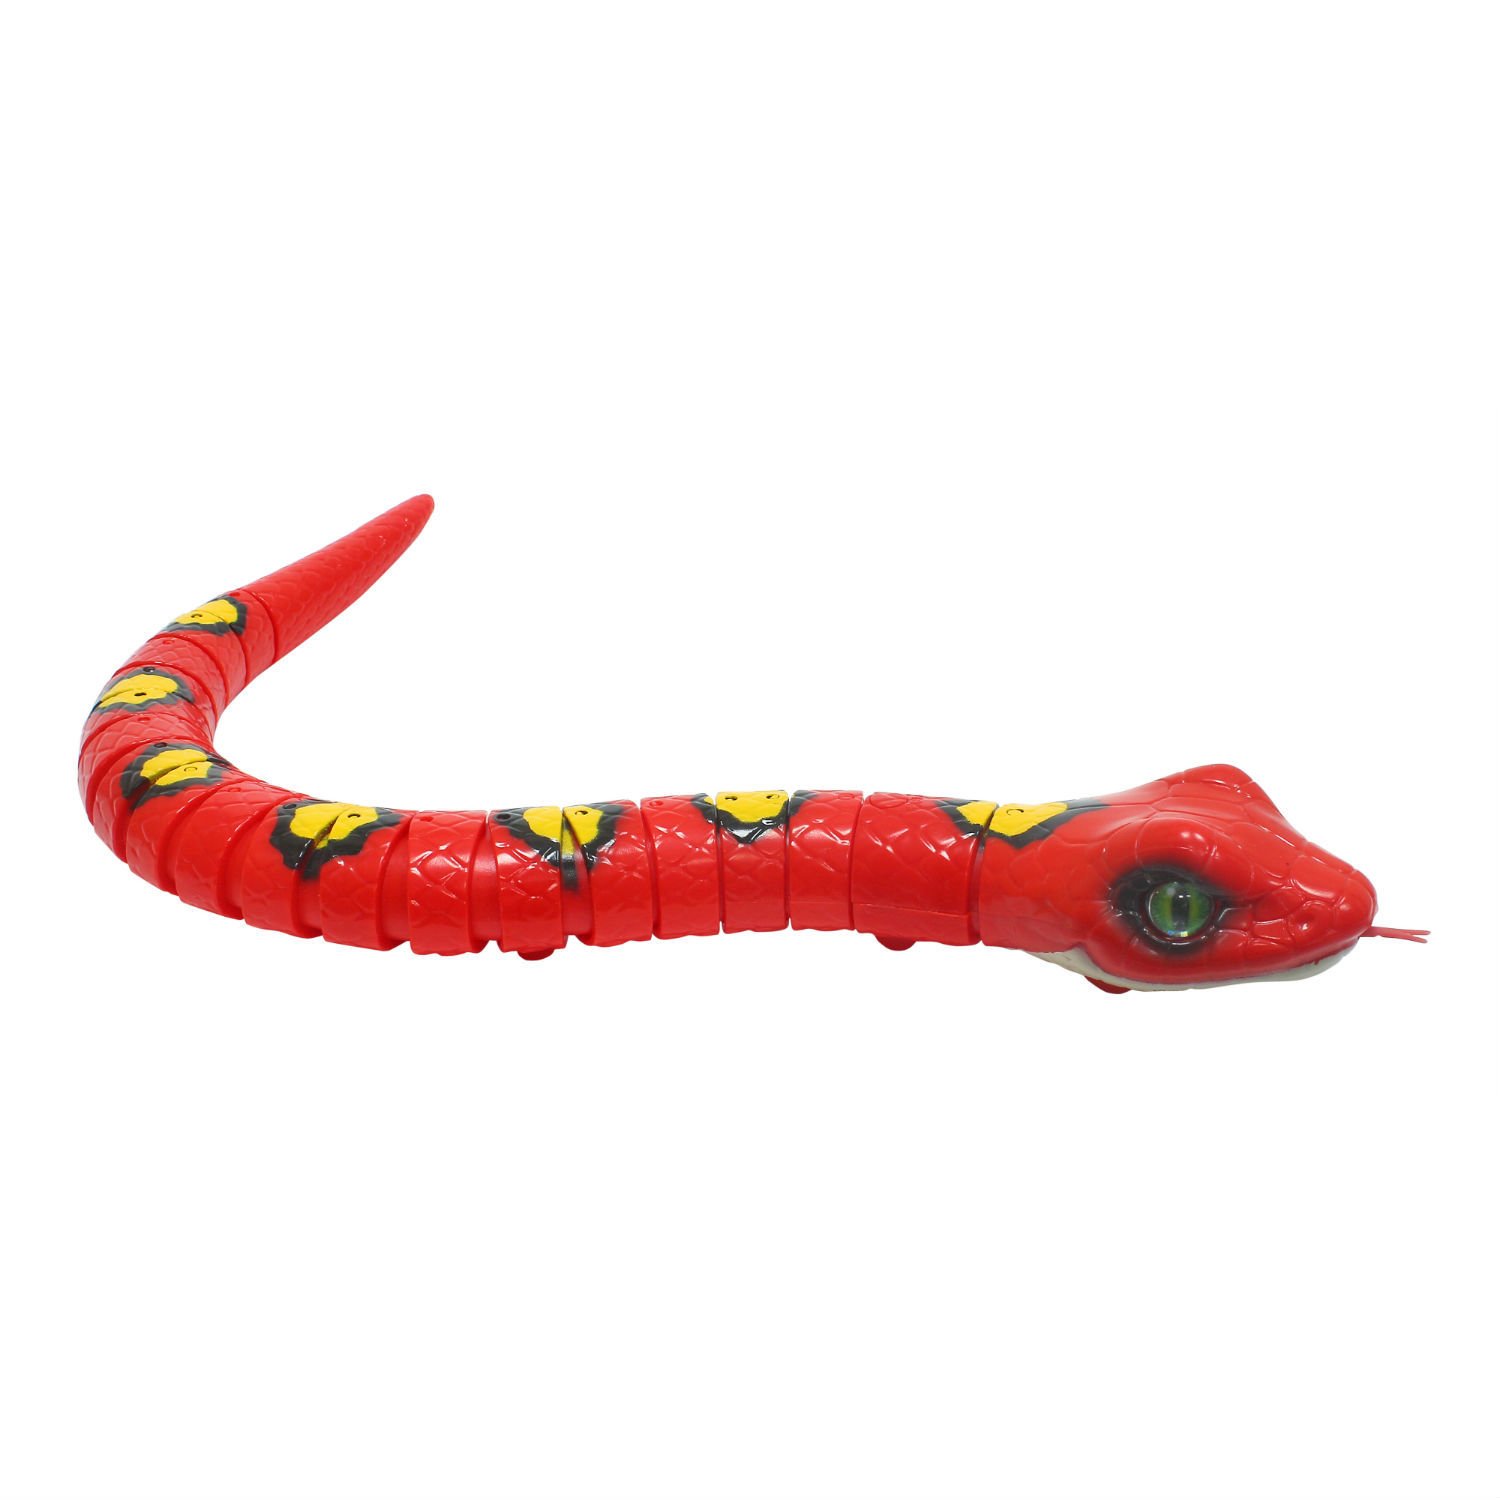 Игрушка змея купить. Zuru Robo Alive змея. Робот змея (1csc20003864). Робо-ящерица ROBOALIVE красный. РОБОЗМЕЯ игрушка.